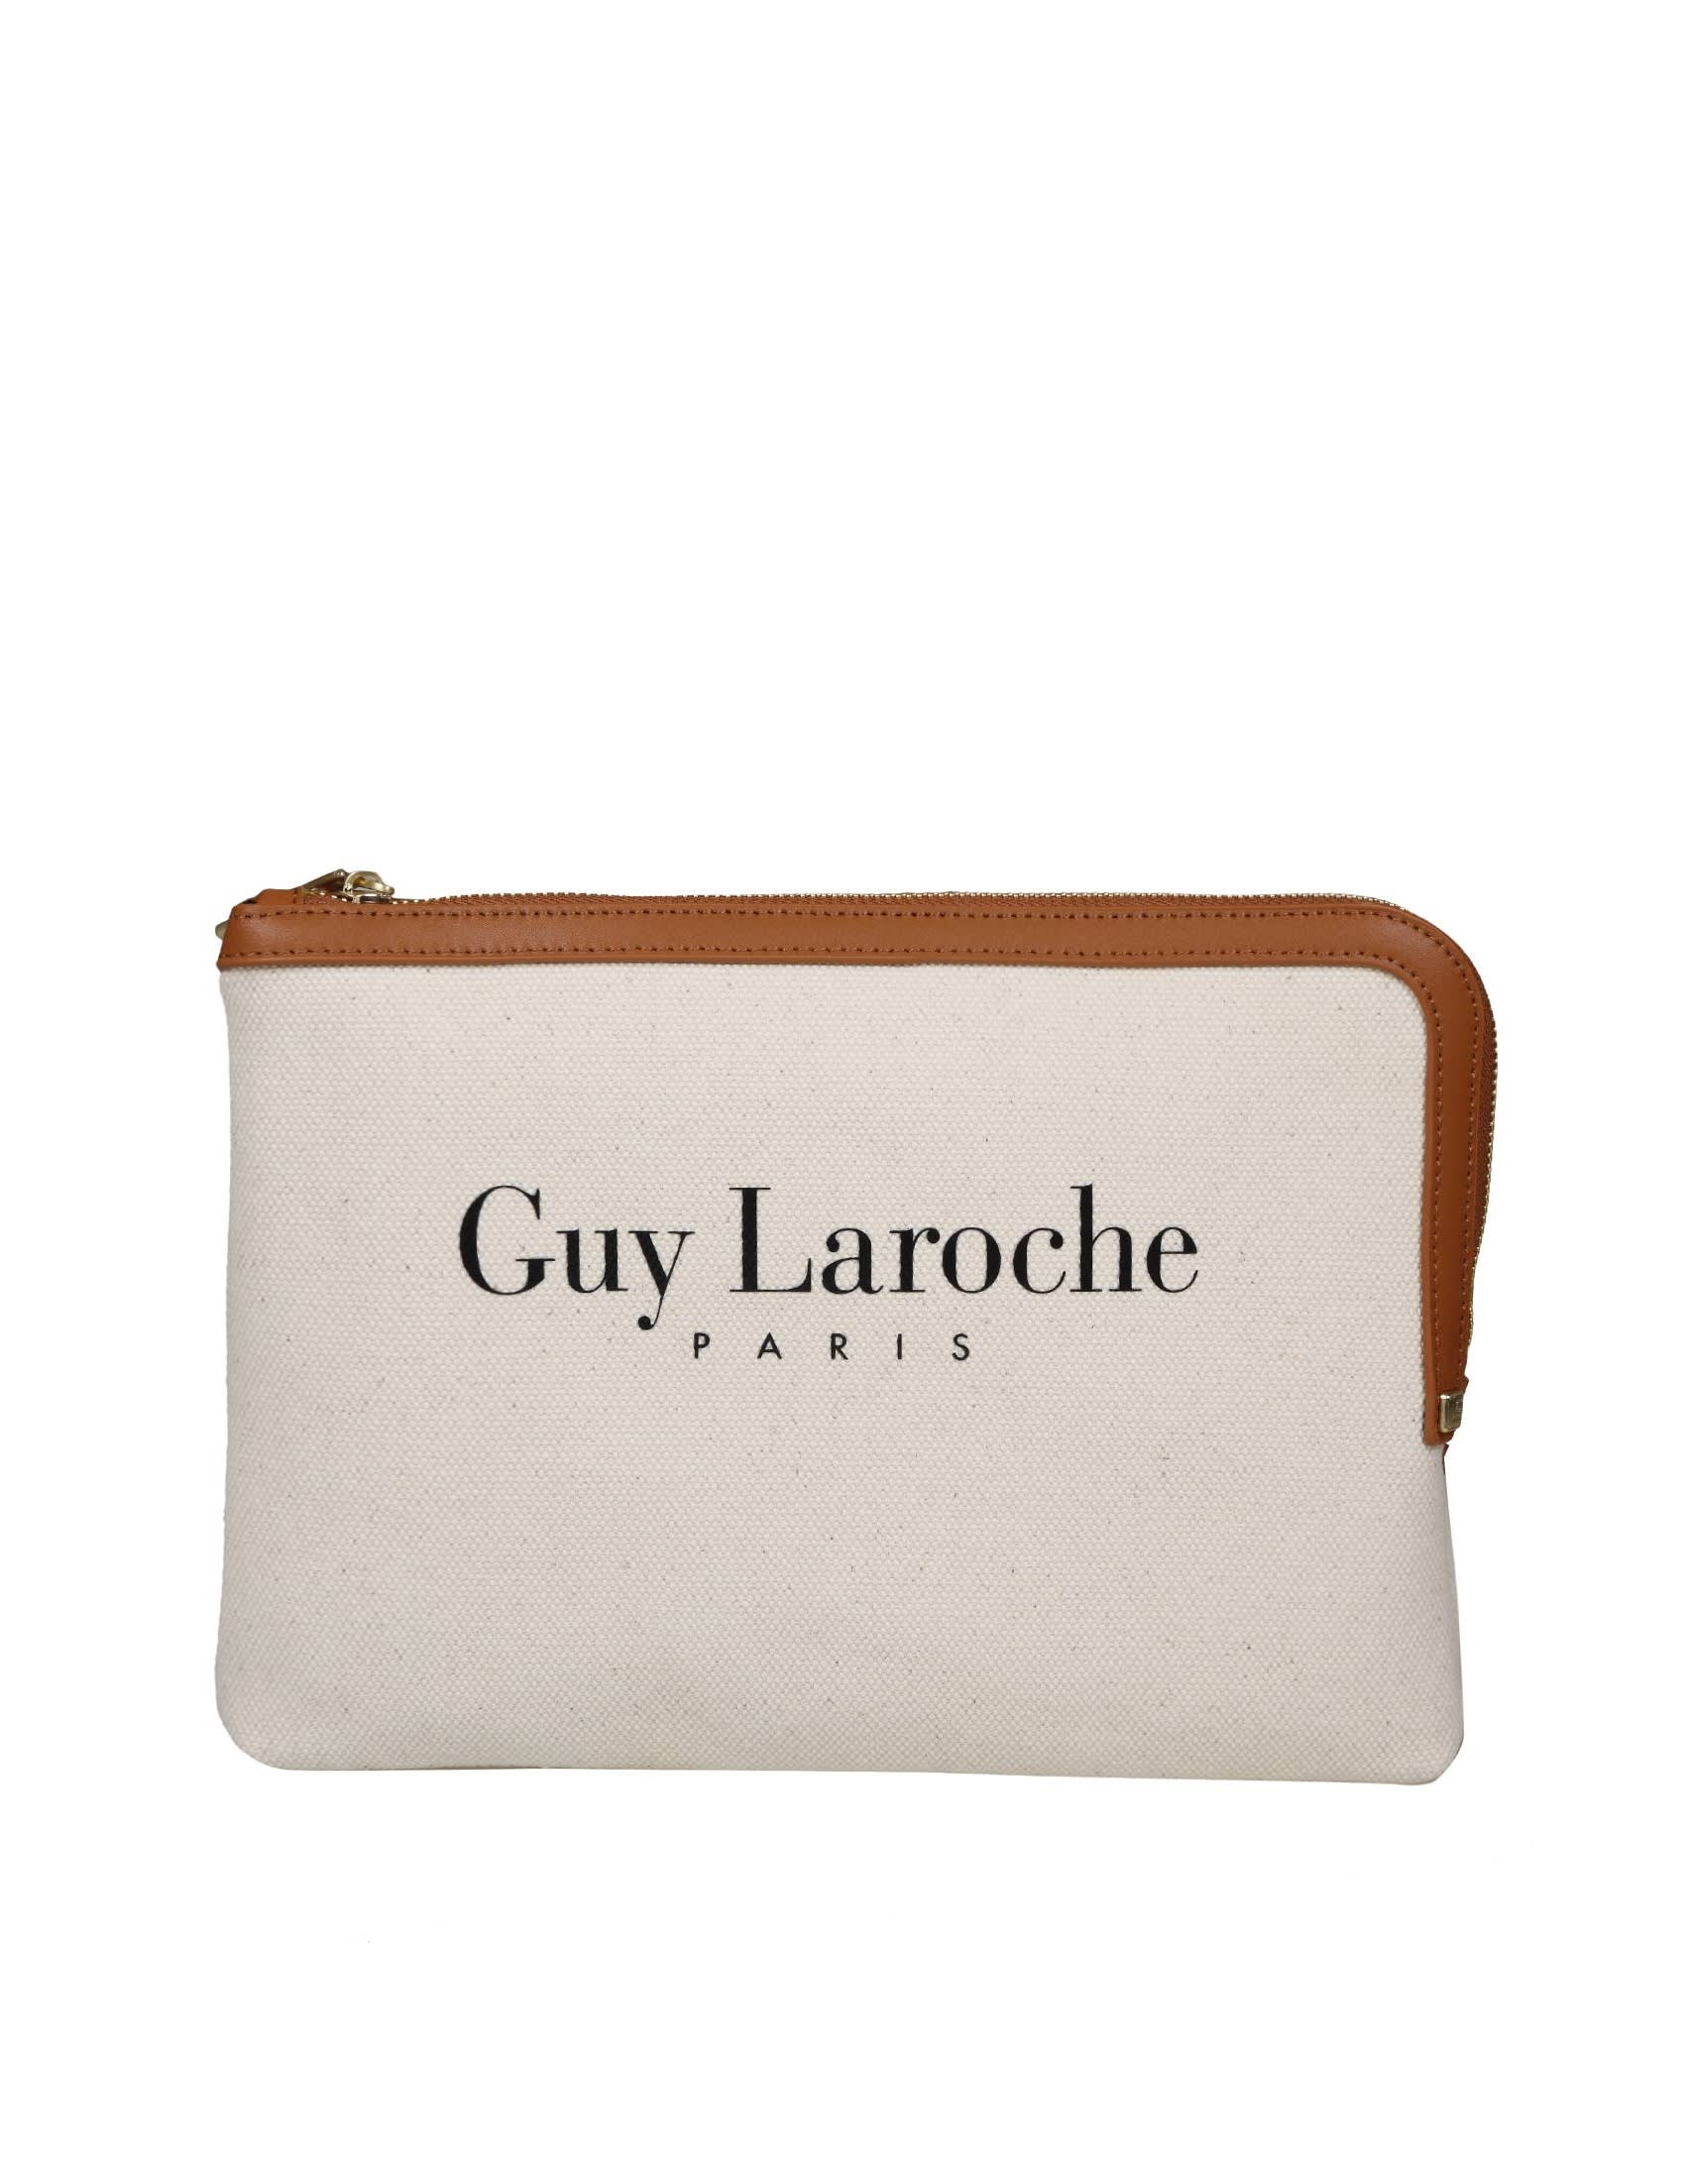 Cross body bags Guy Laroche - Guy laroche crossbody in canvas and leather -  18204004